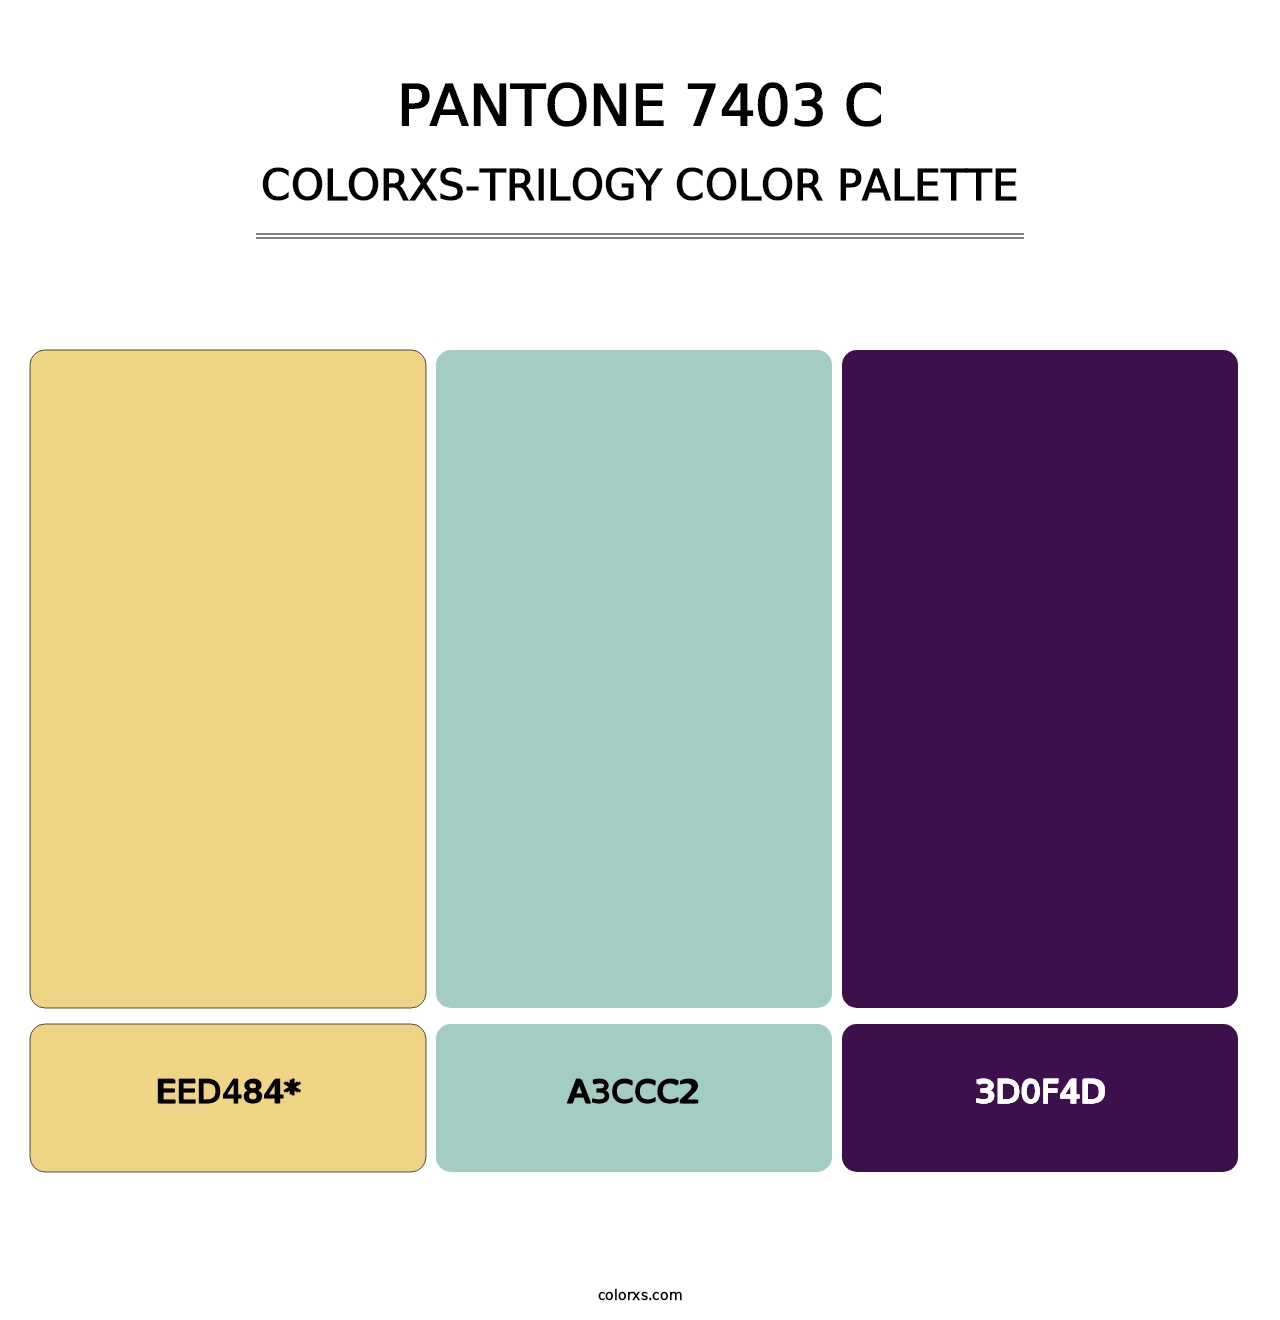 PANTONE 7403 C - Colorxs Trilogy Palette